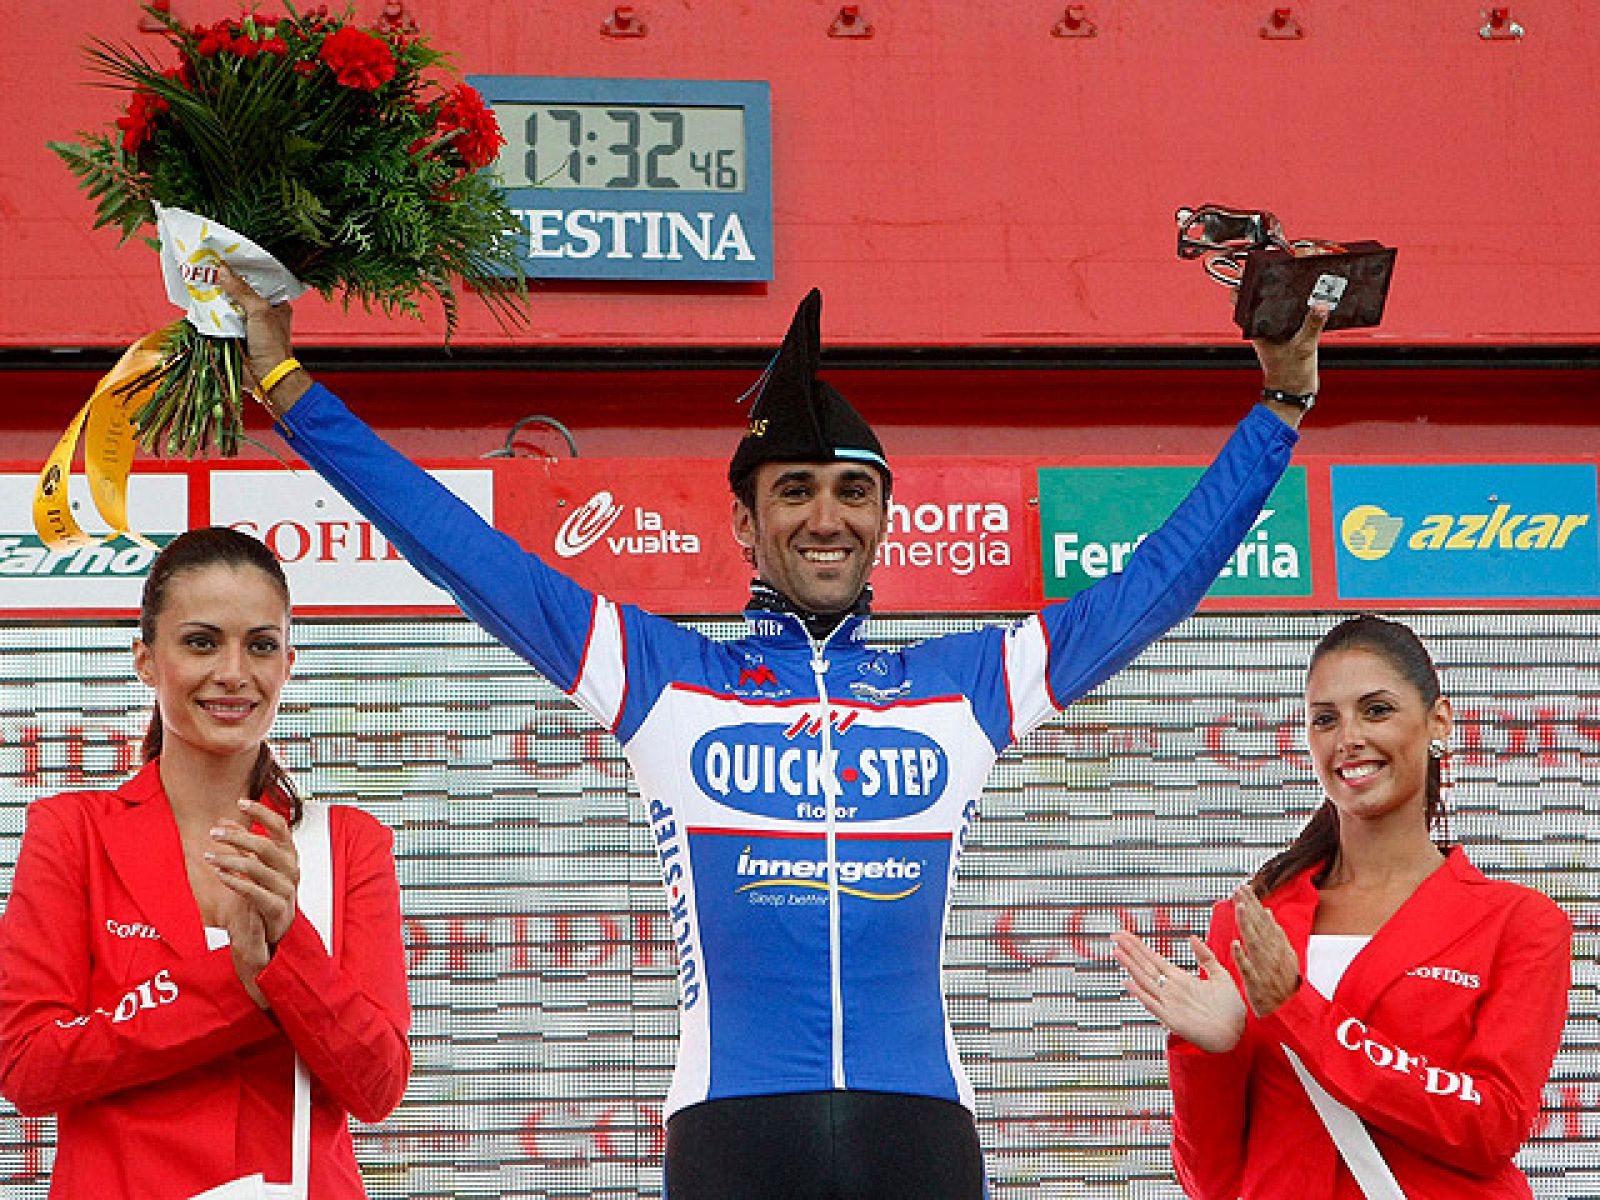 El ciclista asturiano Carlos Barredo Llamazales (Quick Step) se ha  impuesto en la decimoquinta etapa de la Vuelta Ciclista a España,  disputada en entre Solares y Lagos de Covadonga sobre 187,3  kilómetros, marcada por el fuerte ritmo y por el mal t